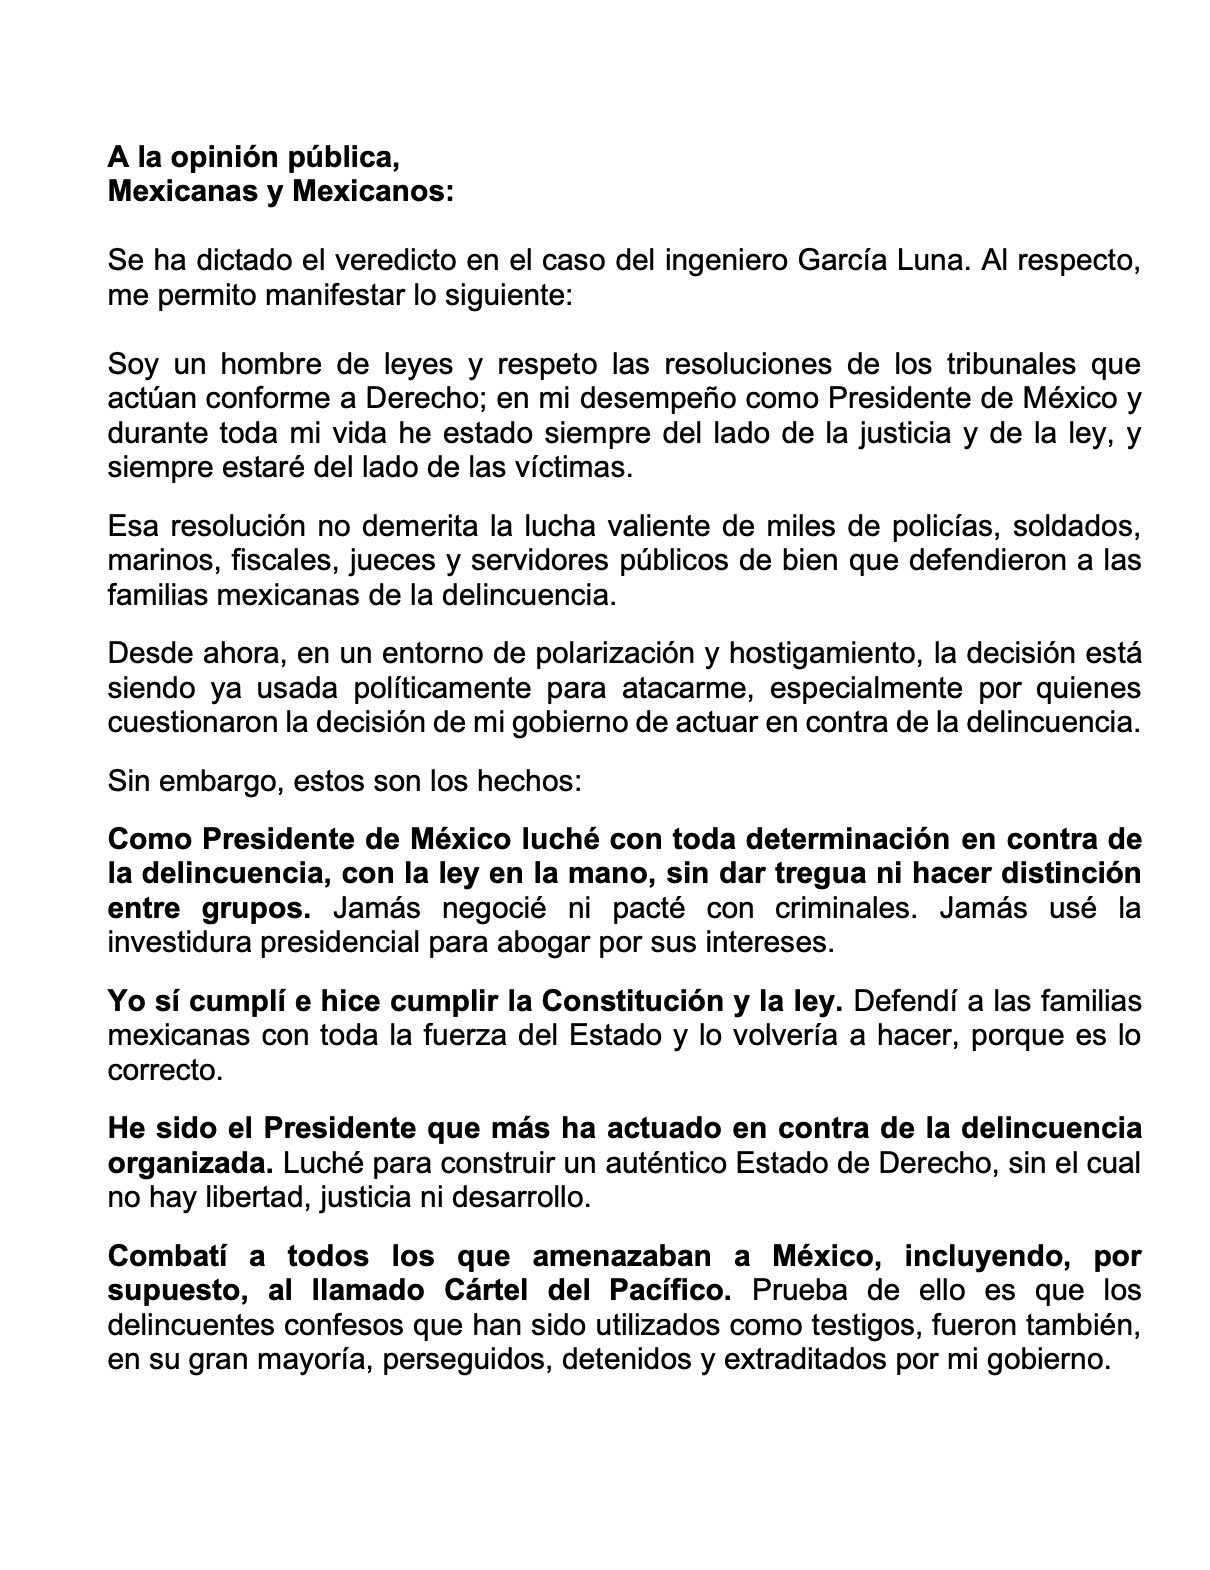 Comunicado de Felipe Calderón contra acusaciones hacia él (Twitter/@FelipeCalderon)